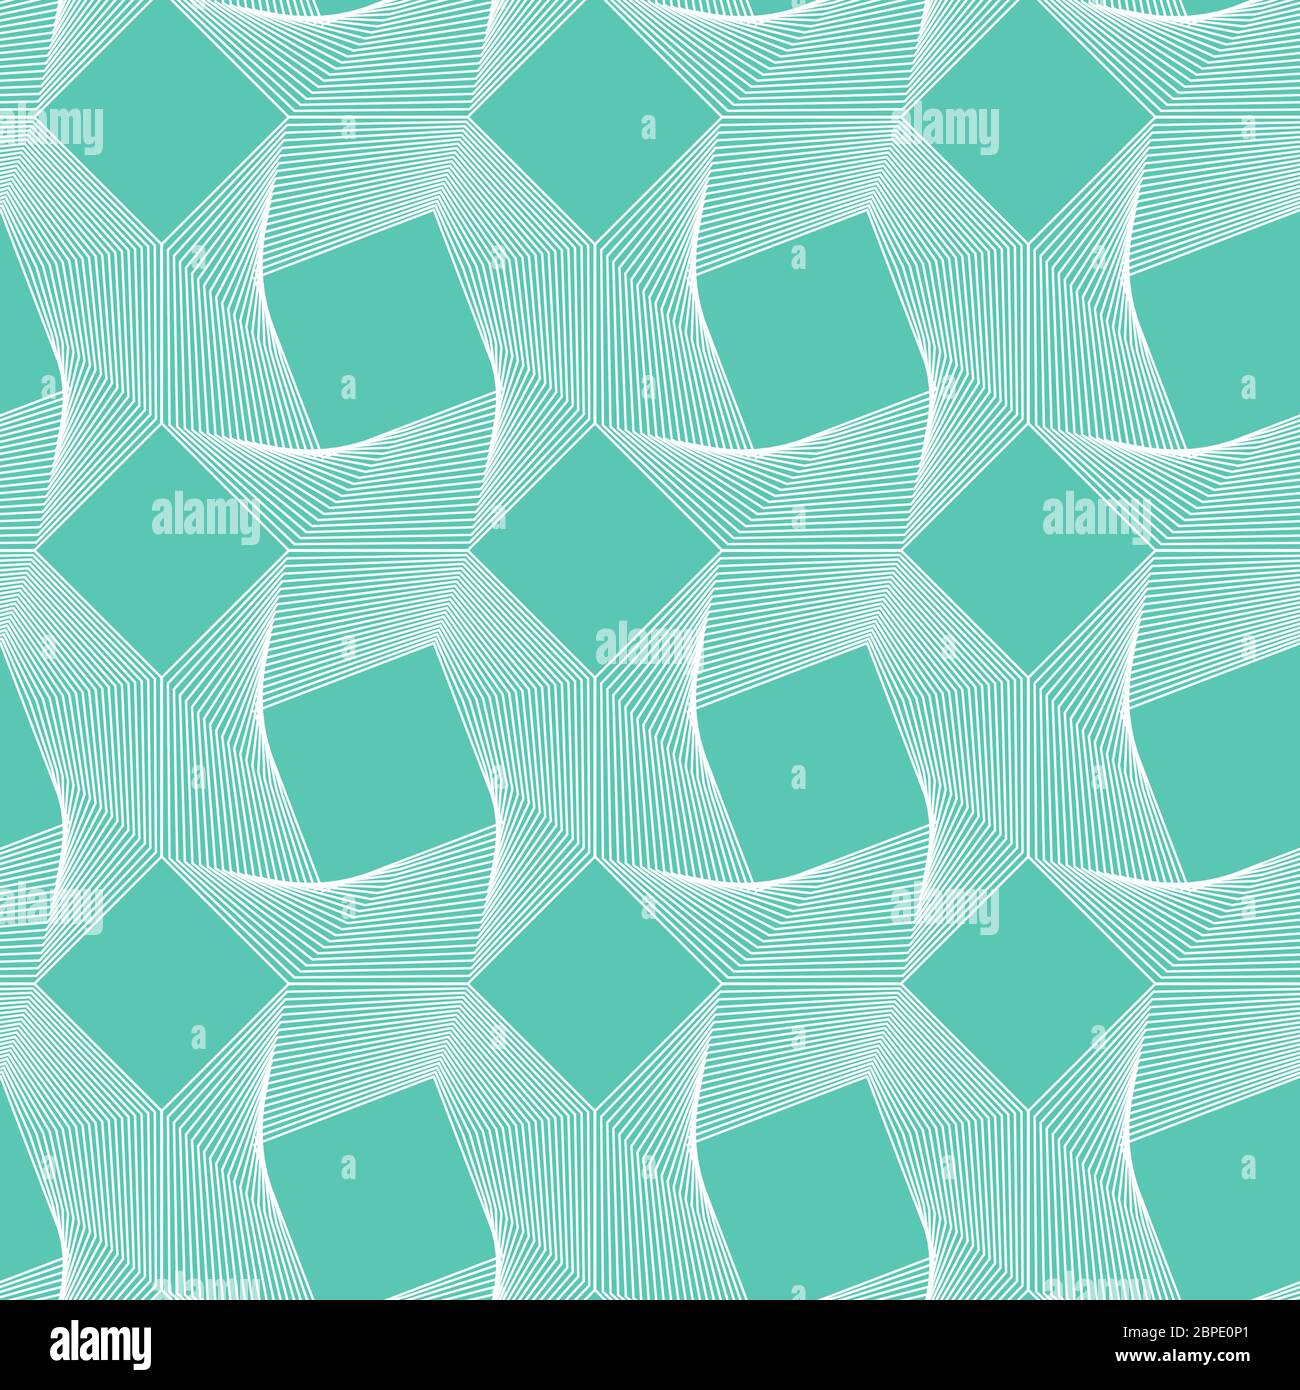 Aqua Menthe, Neo Mint, Smaragd, türkis geometrische Vektor nahtlose Muster.Farbe 2020. Wiederholende quadratische Textur in neo mint Farben für Hintergrund Stock Vektor